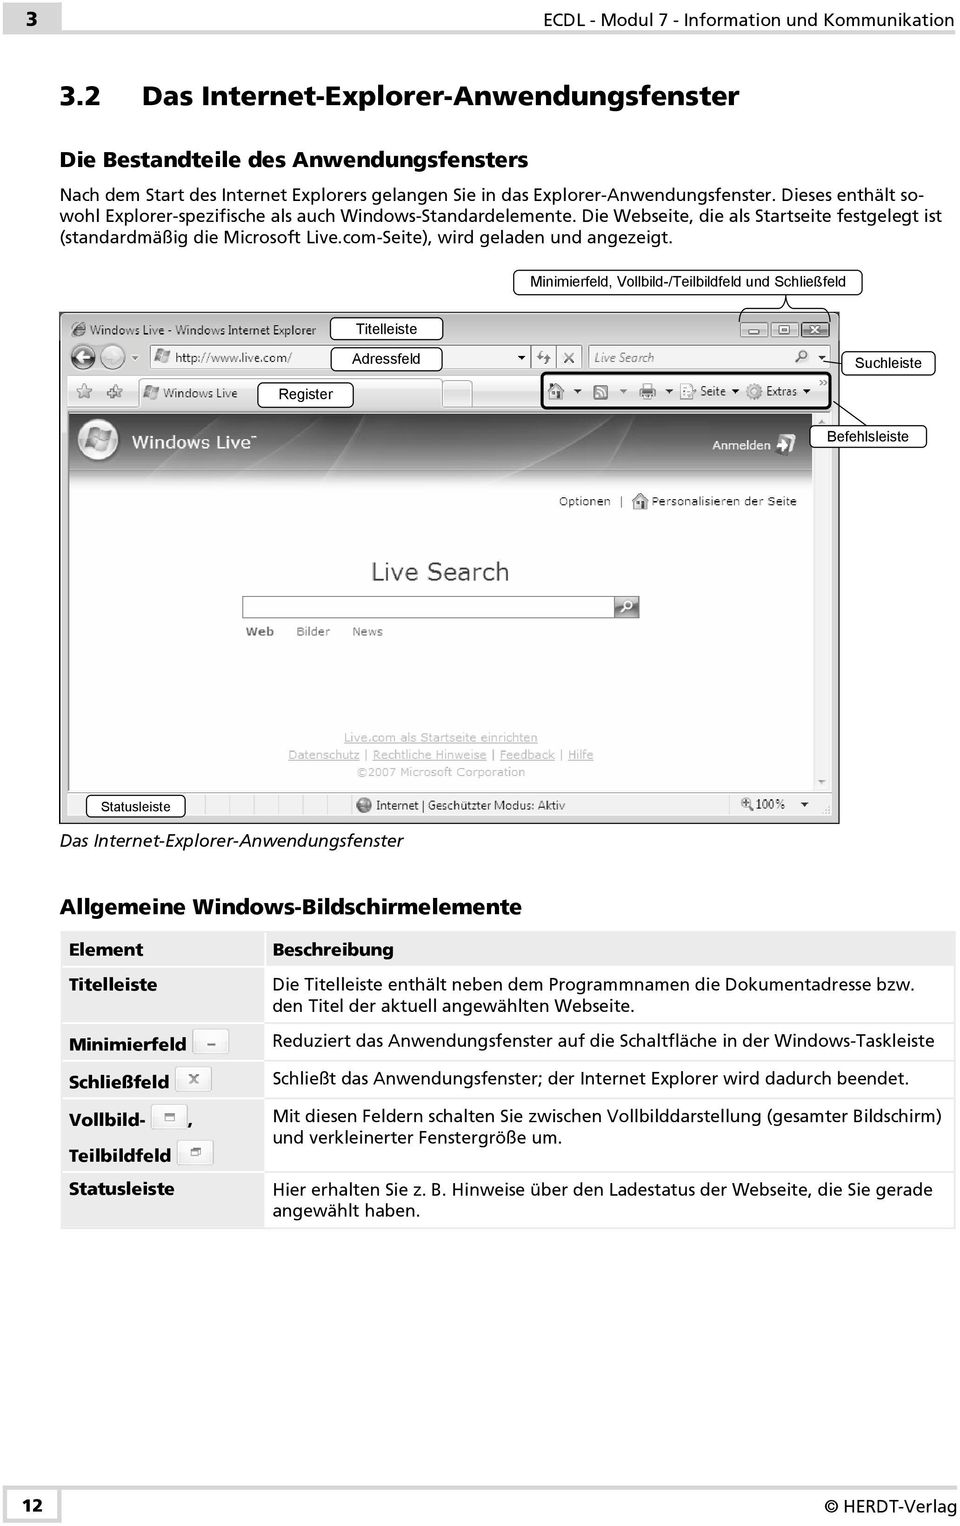 Dieses enthält sowohl Explorer-spezifische als auch Windows-Standardelemente. Die Webseite, die als Startseite festgelegt ist (standardmäßig die Microsoft Live.com-Seite), wird geladen und angezeigt.